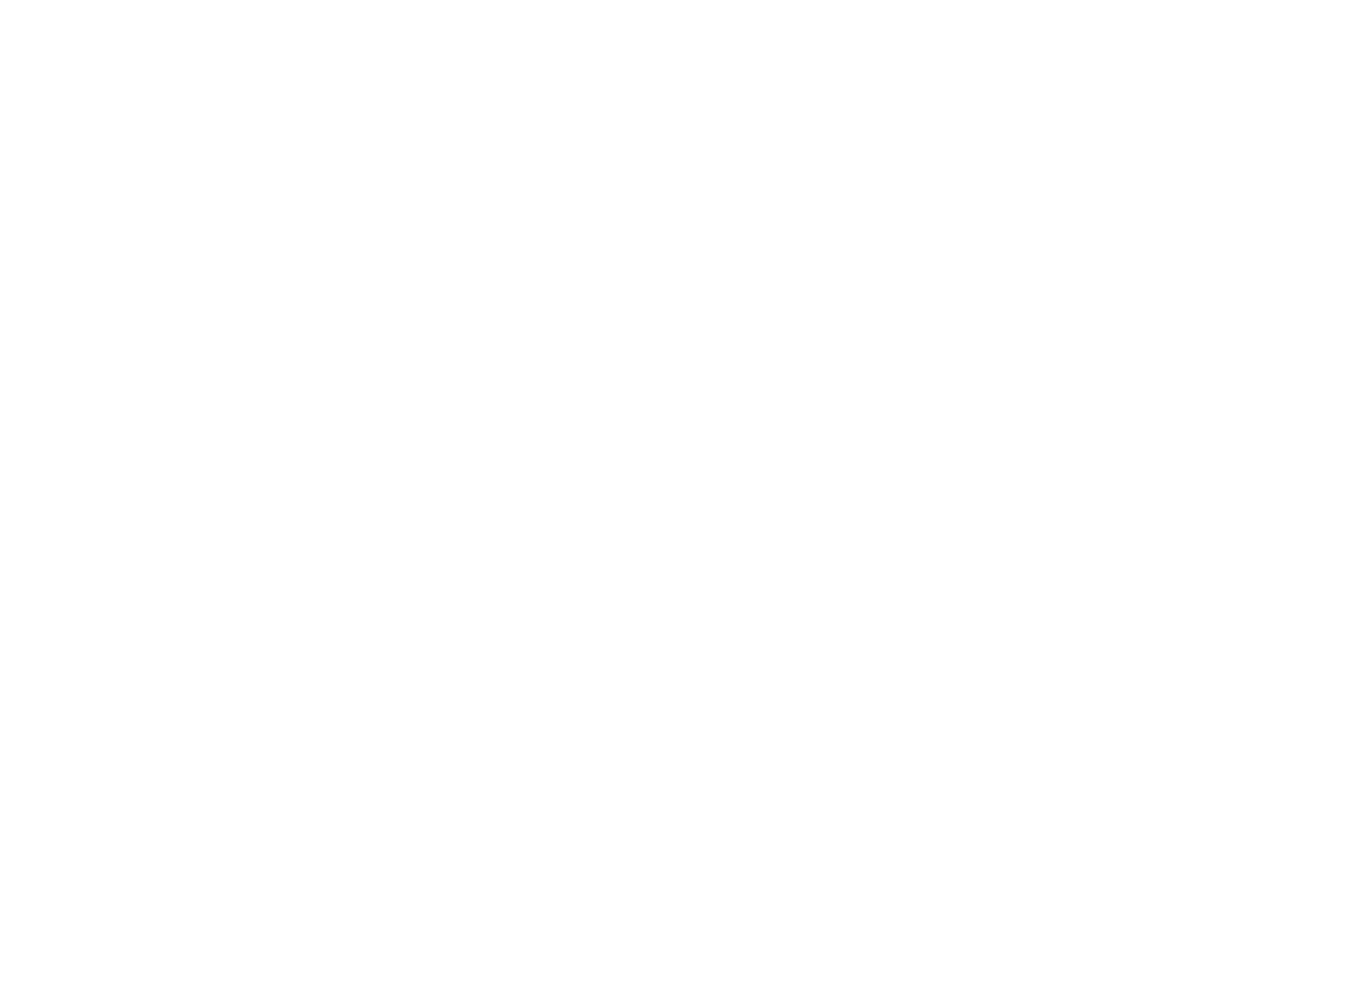 Logo Wallonie tourisme CGT constitué d'un coq en noir et blanc avec une patte en l'air